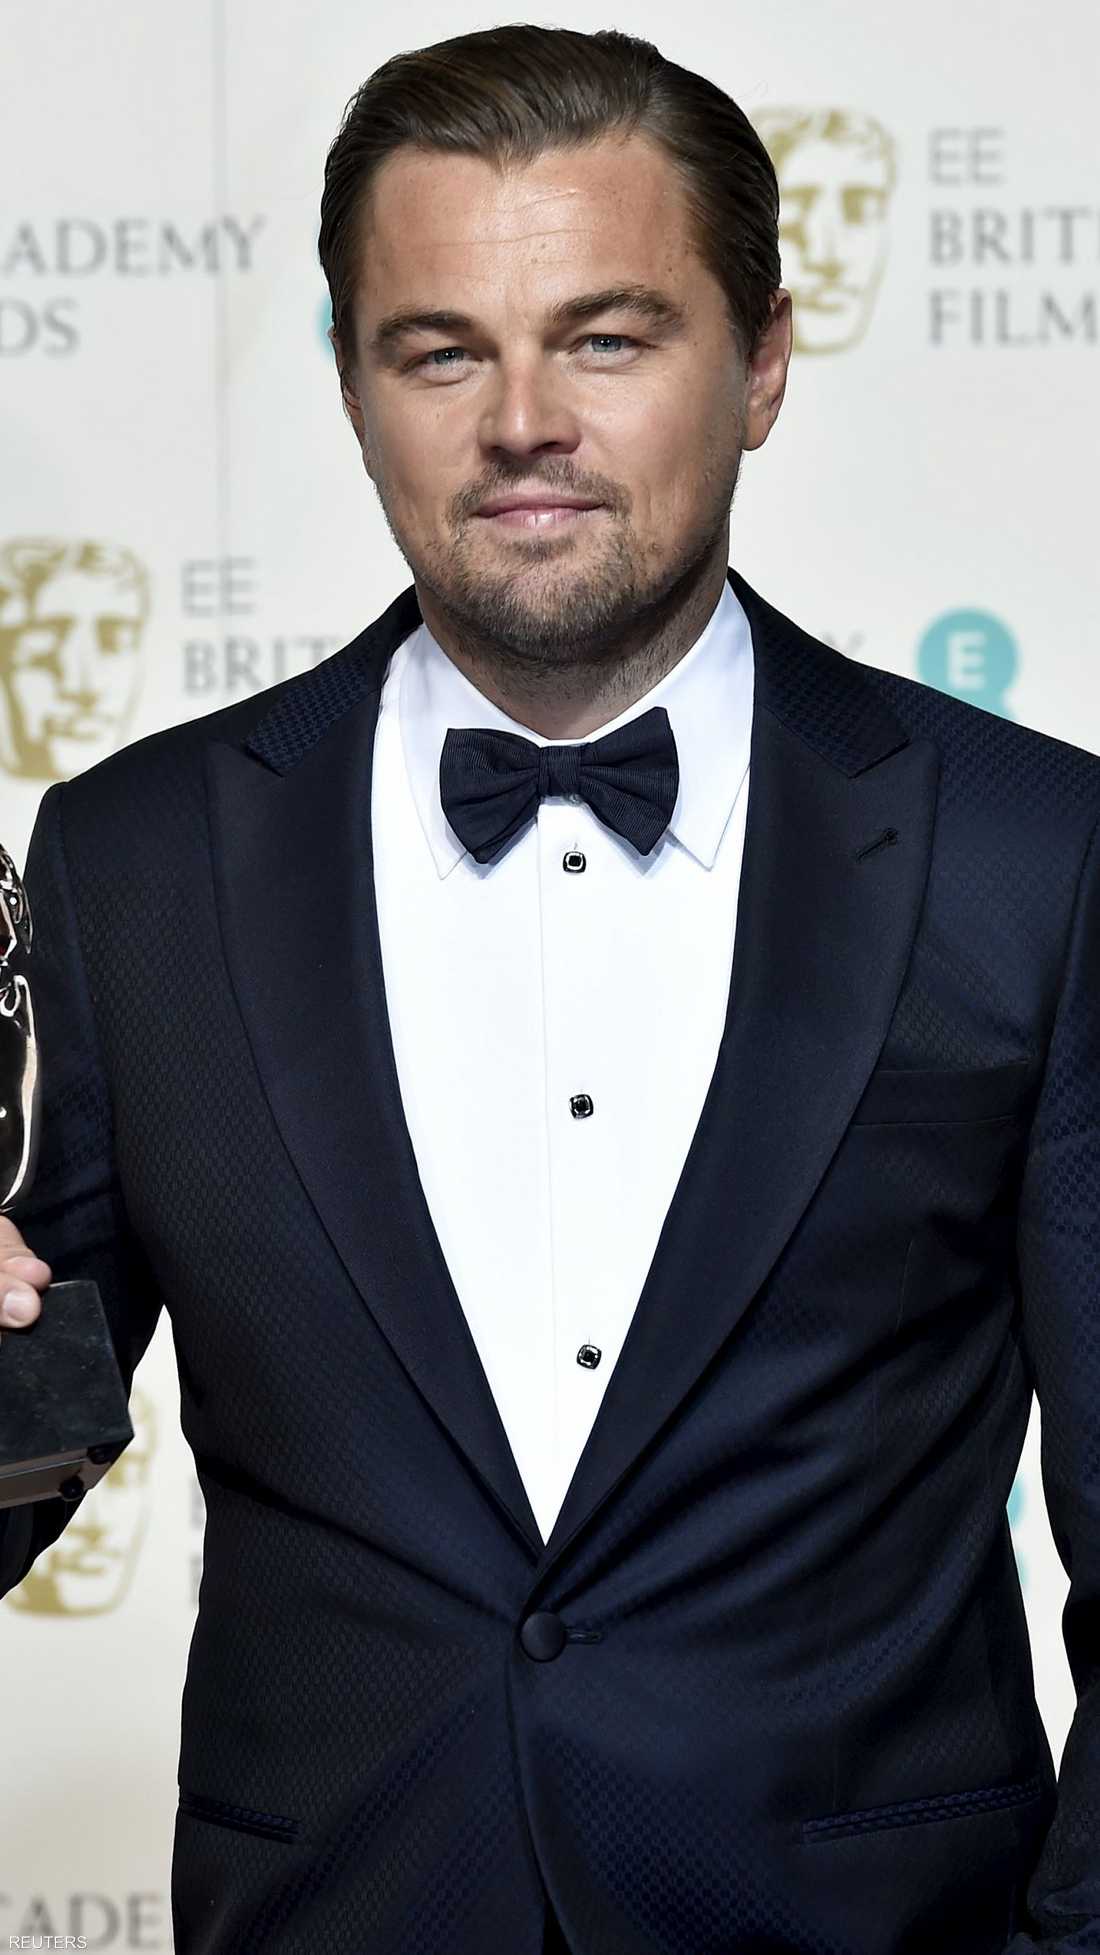 ليوناردو دي كابريو حصل على جائزة أفضل ممثل عن دوره المميز في فيلم ذا ريفينانت